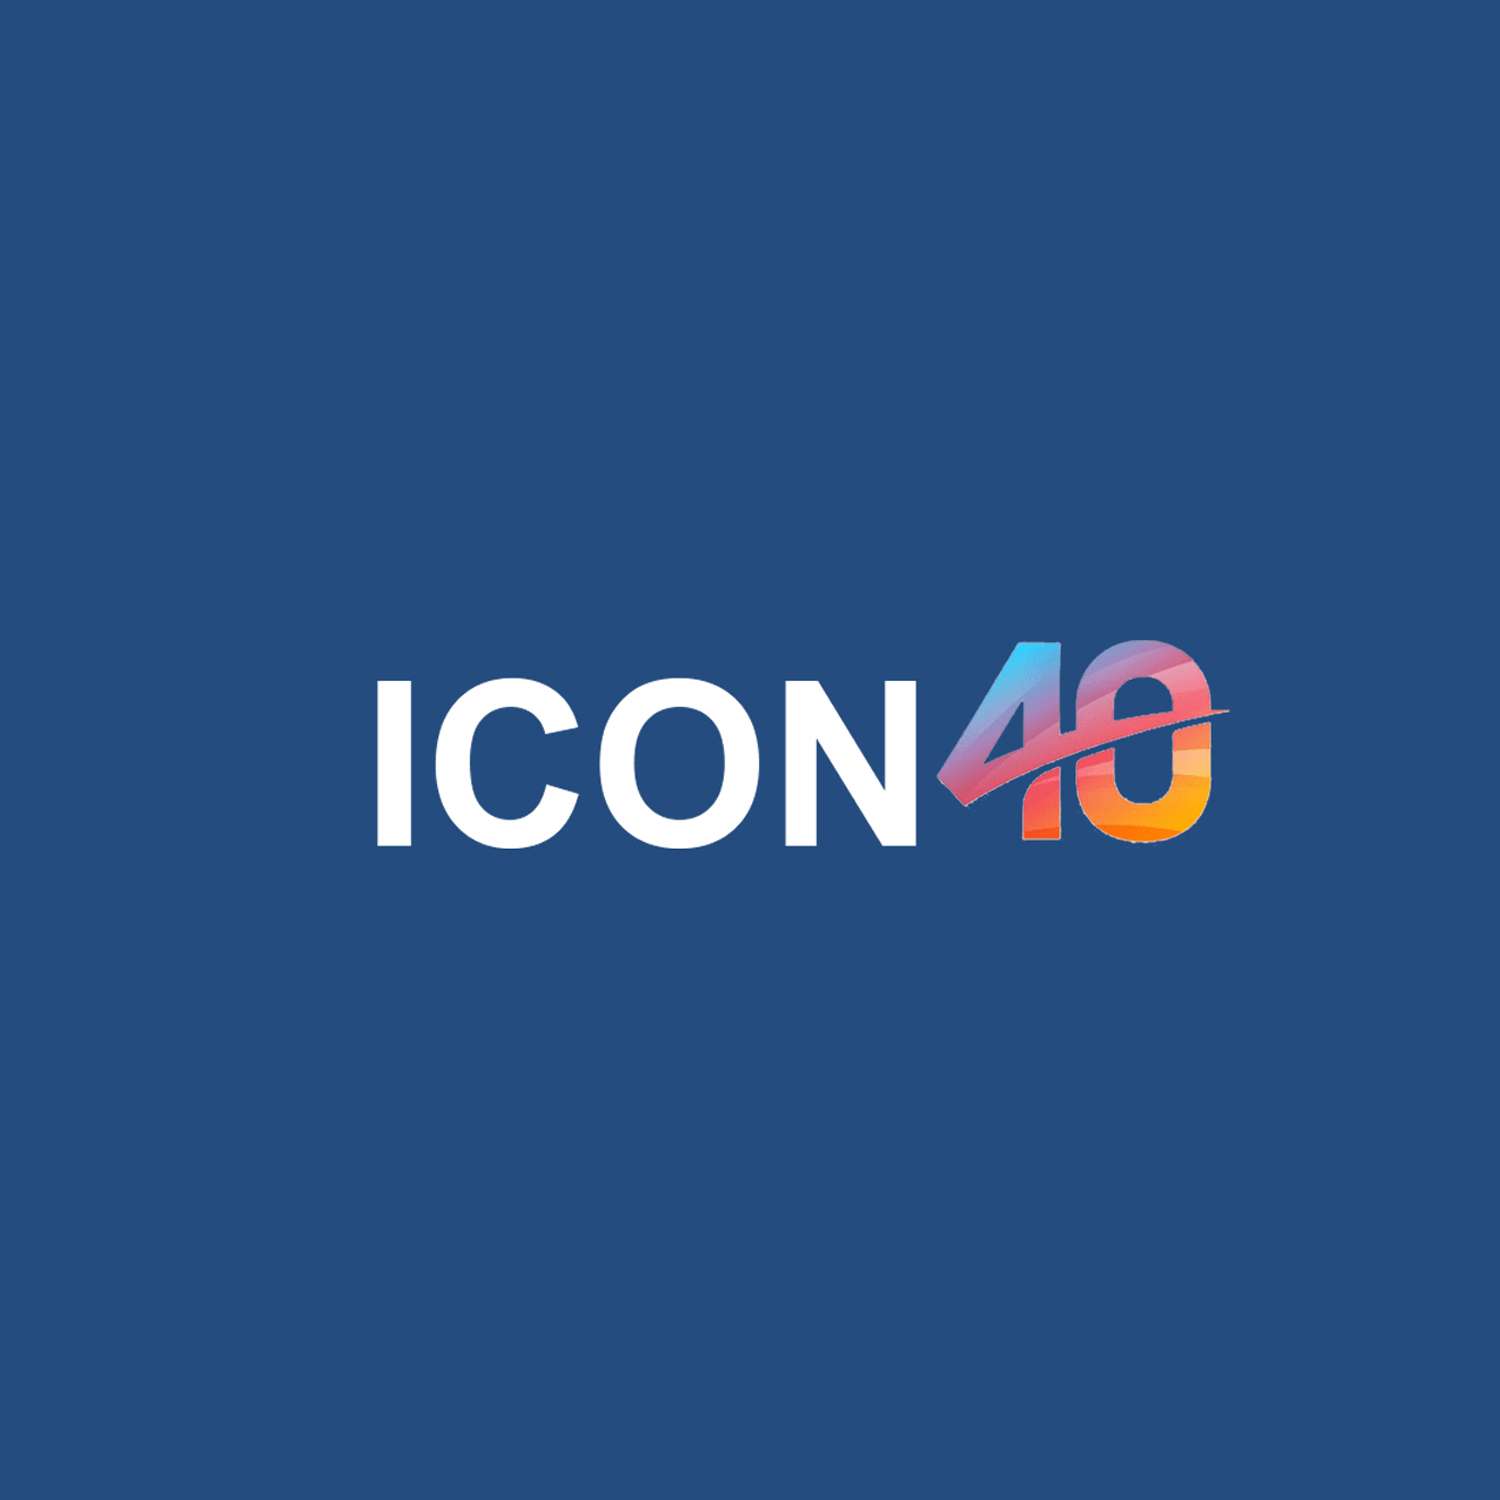 CĂN HỘ ICON 40 - WEBSITE CHÍNH THỨC - ICON 40 HẠ LONG